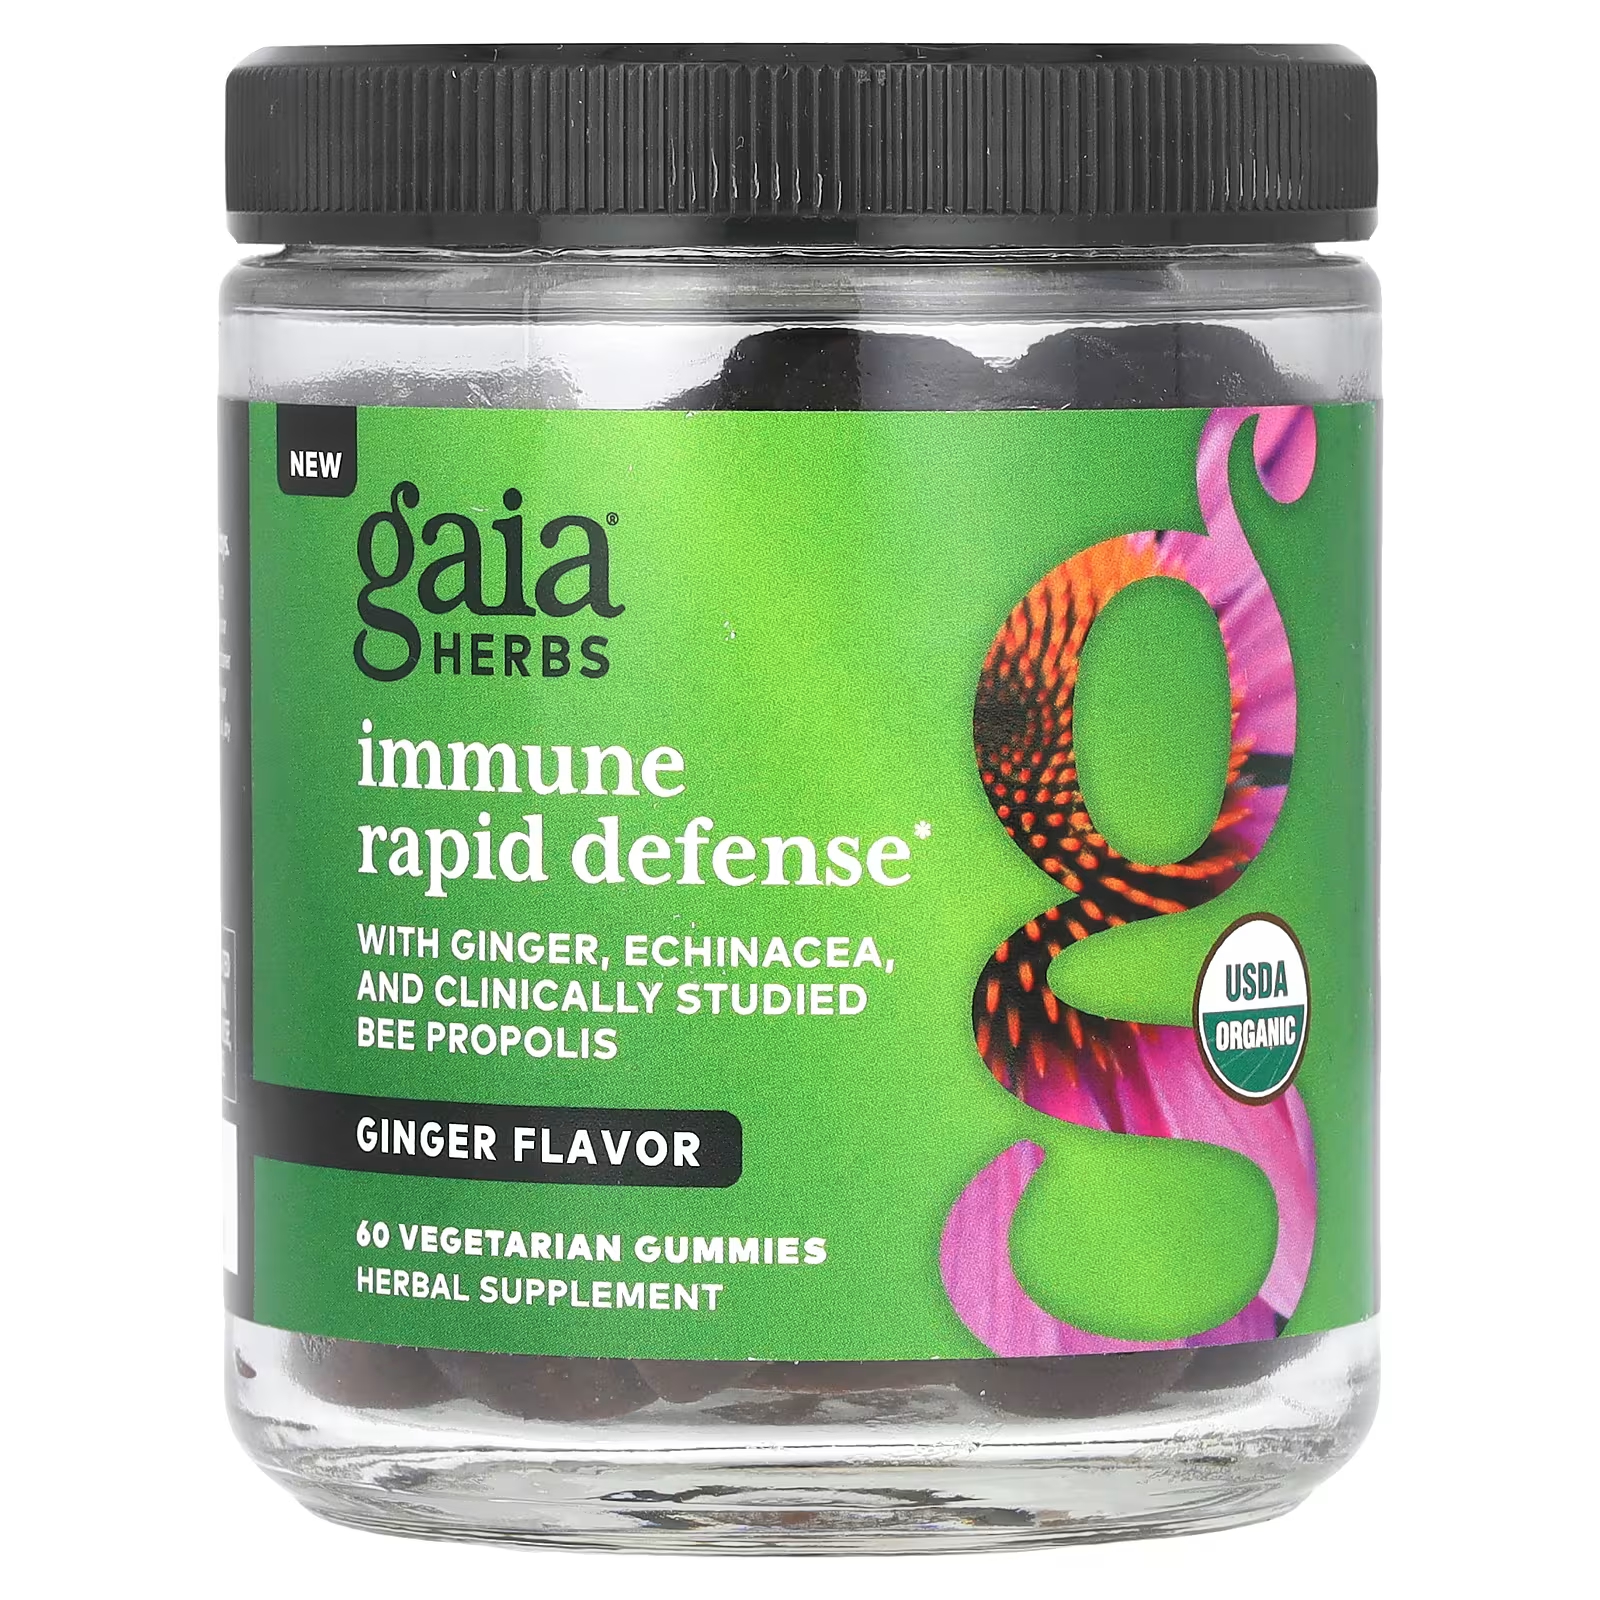 Растительная добавка Gaia Herbs Immune Rapid Defense имбирь, 60 жевательных конфет растительная добавка gaia herbs quick defense 20 жидких фитокапсул